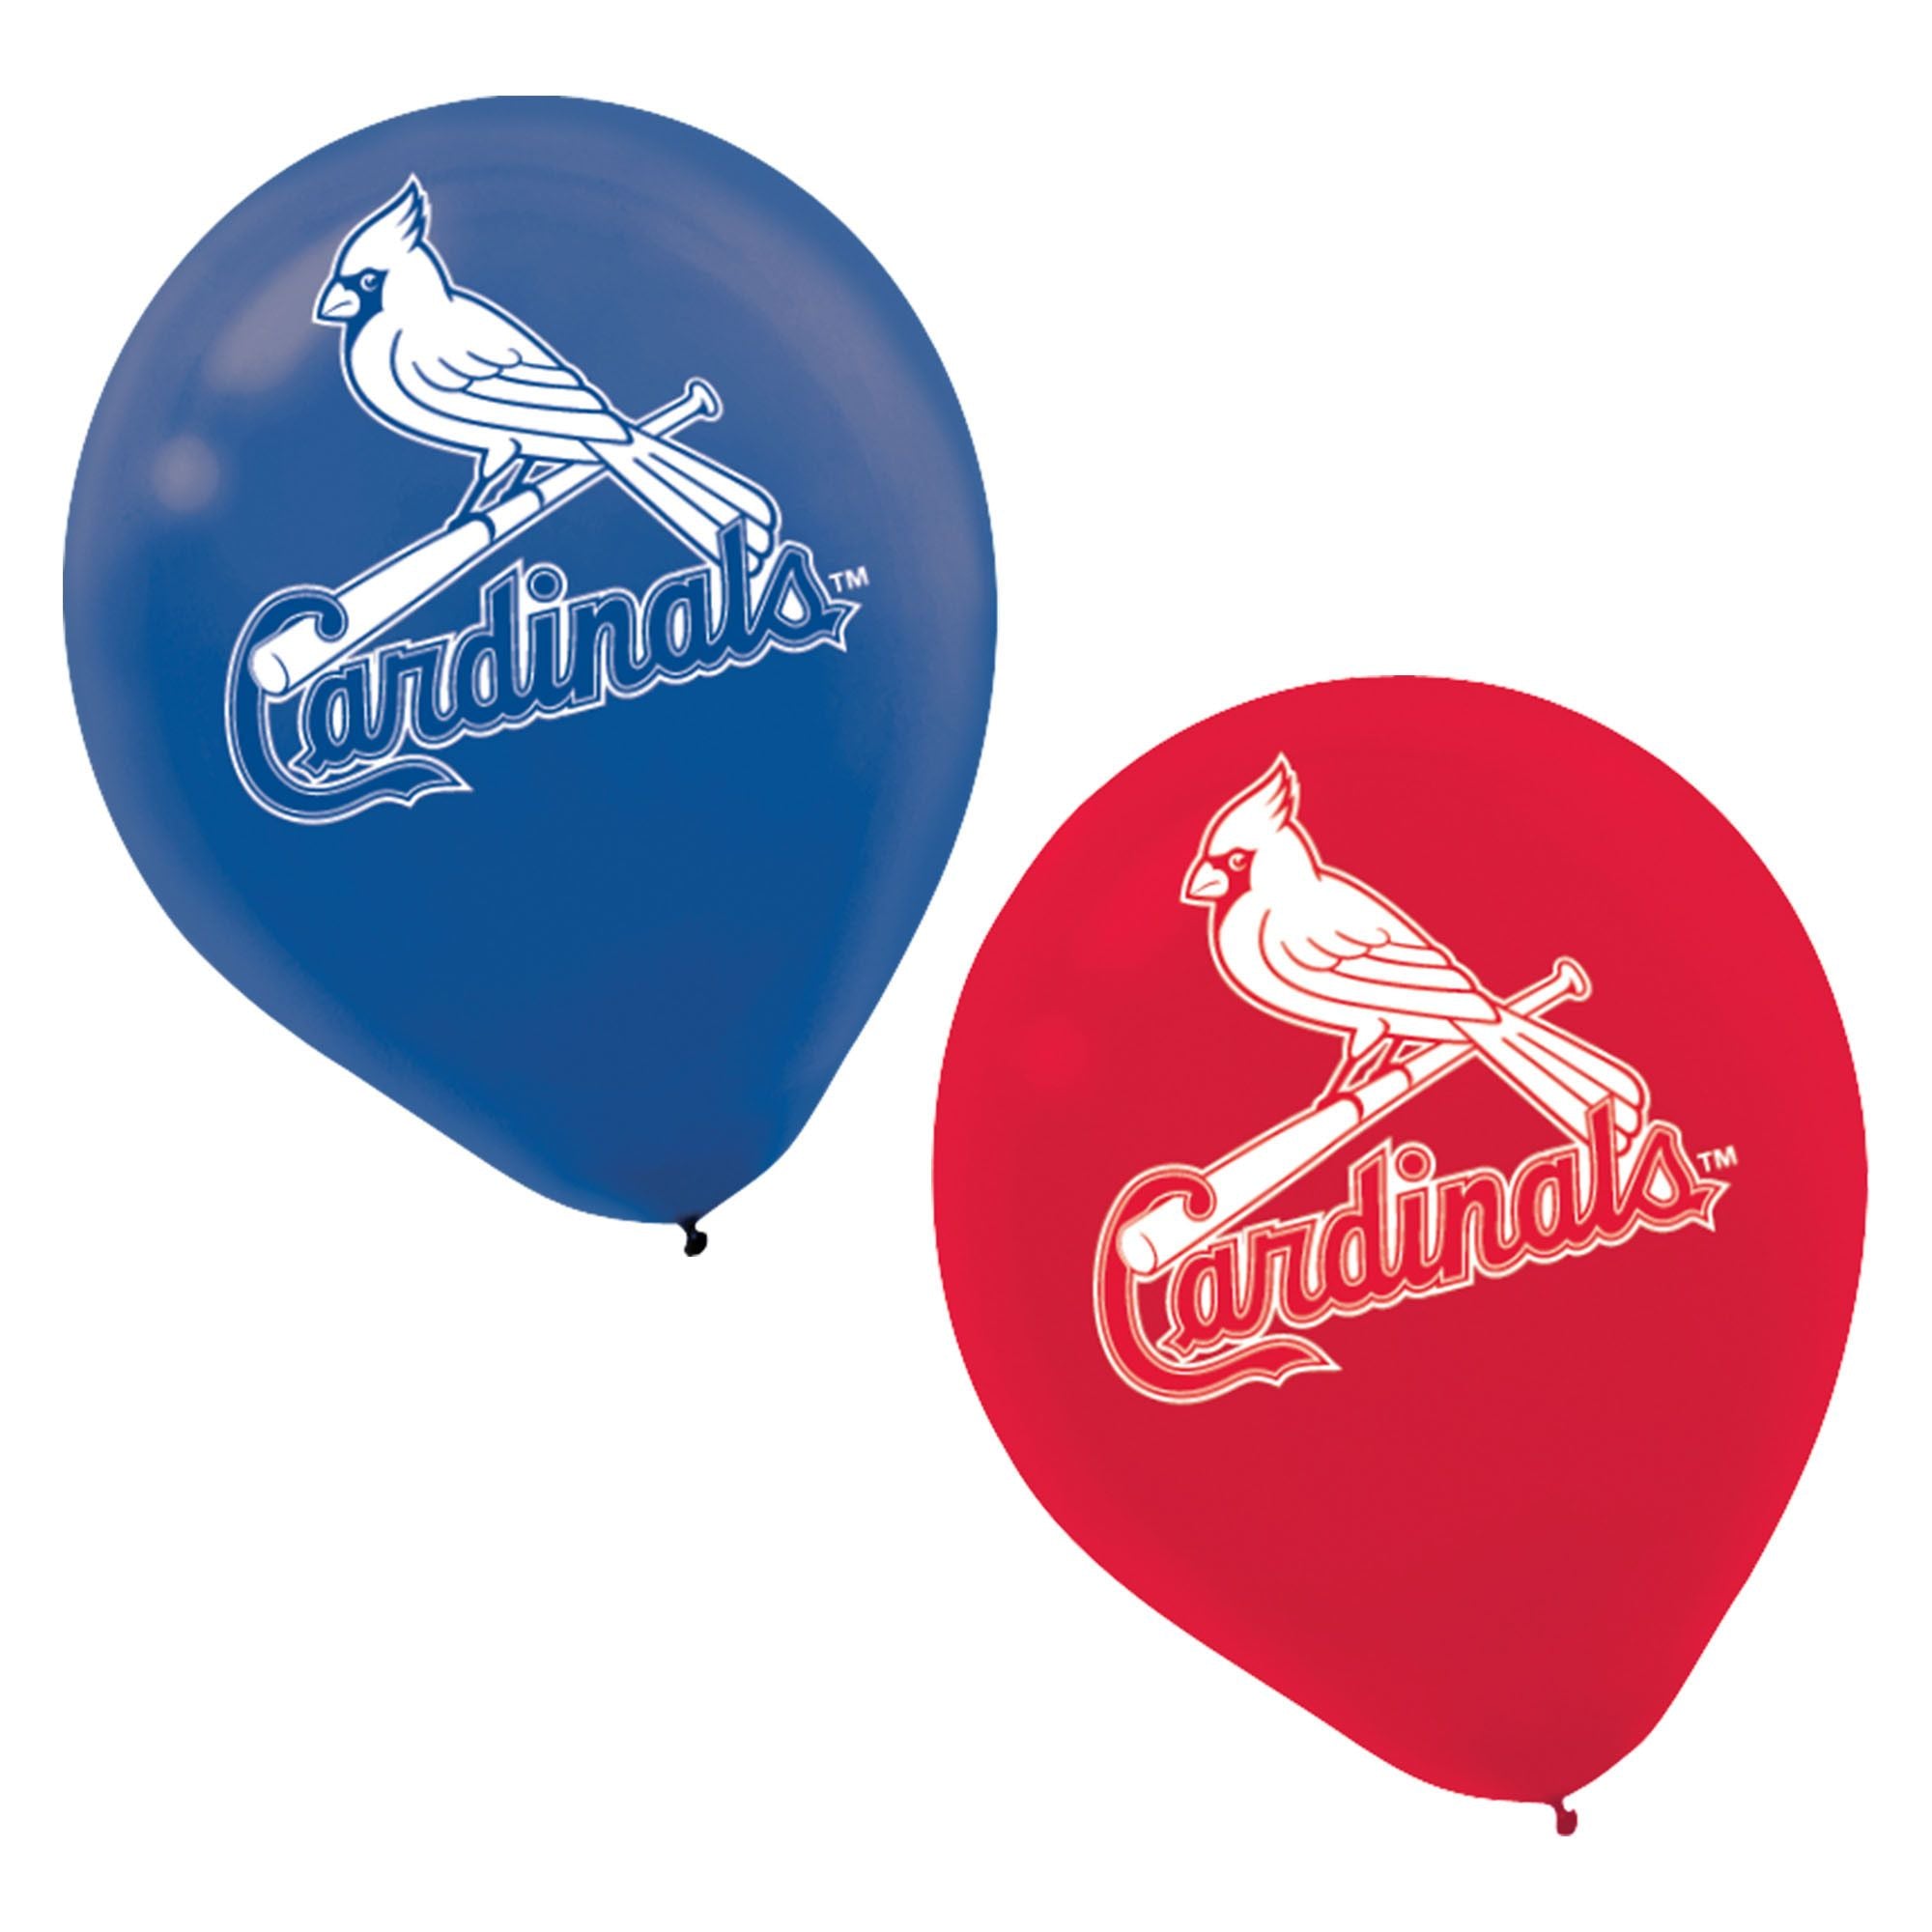 St. Louis Cardinals Major League Baseball Printed Latex Balloons